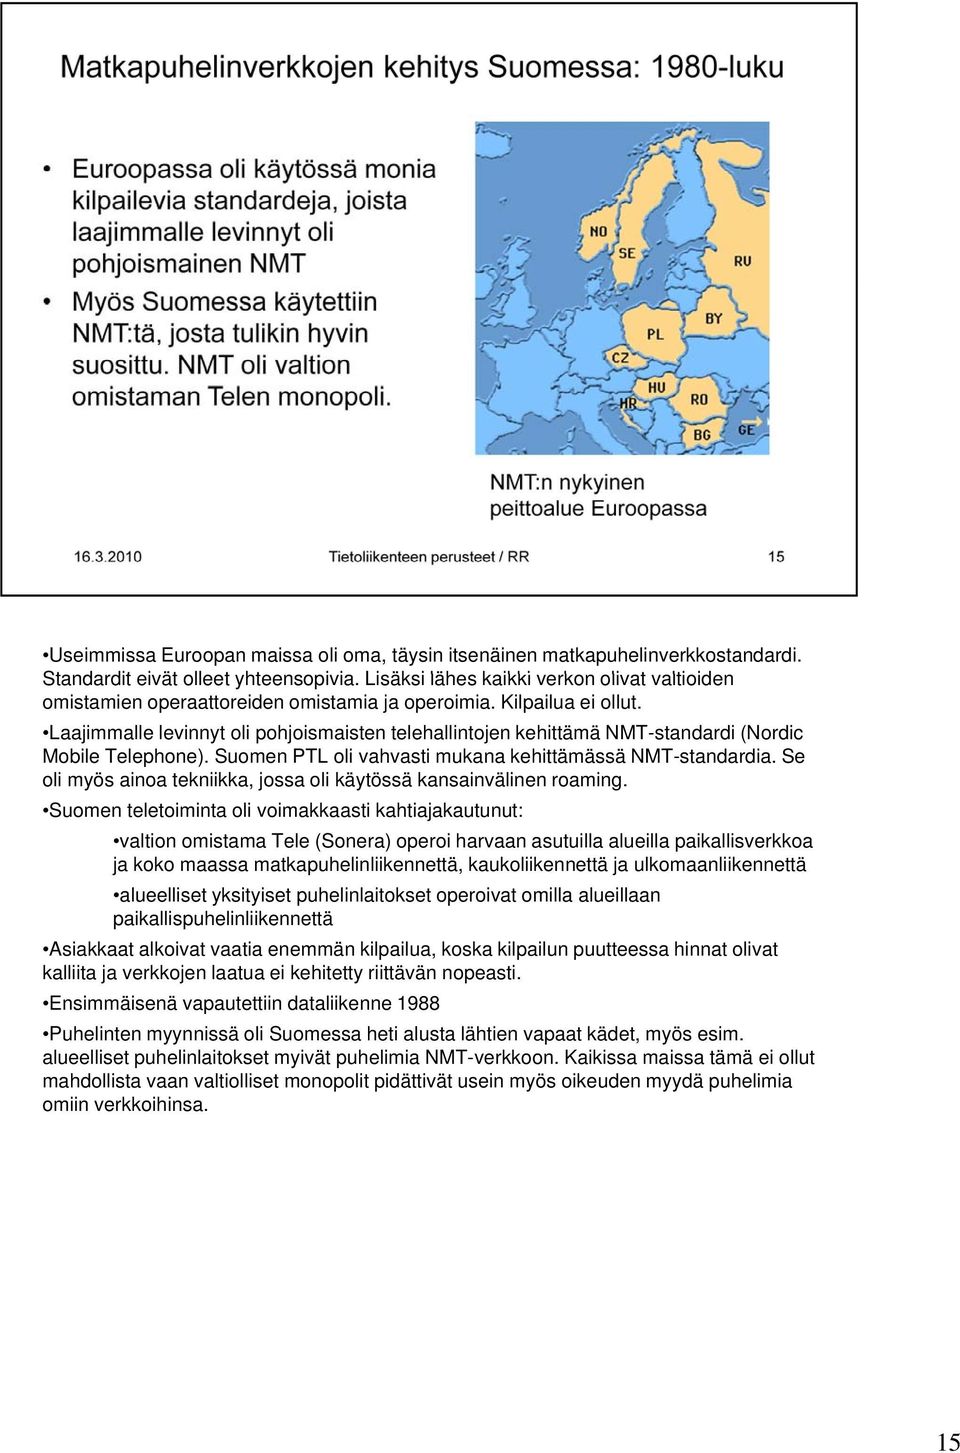 Laajimmalle levinnyt oli pohjoismaisten telehallintojen kehittämä NMT-standardi (Nordic Mobile Telephone). Suomen PTL oli vahvasti mukana kehittämässä NMT-standardia.